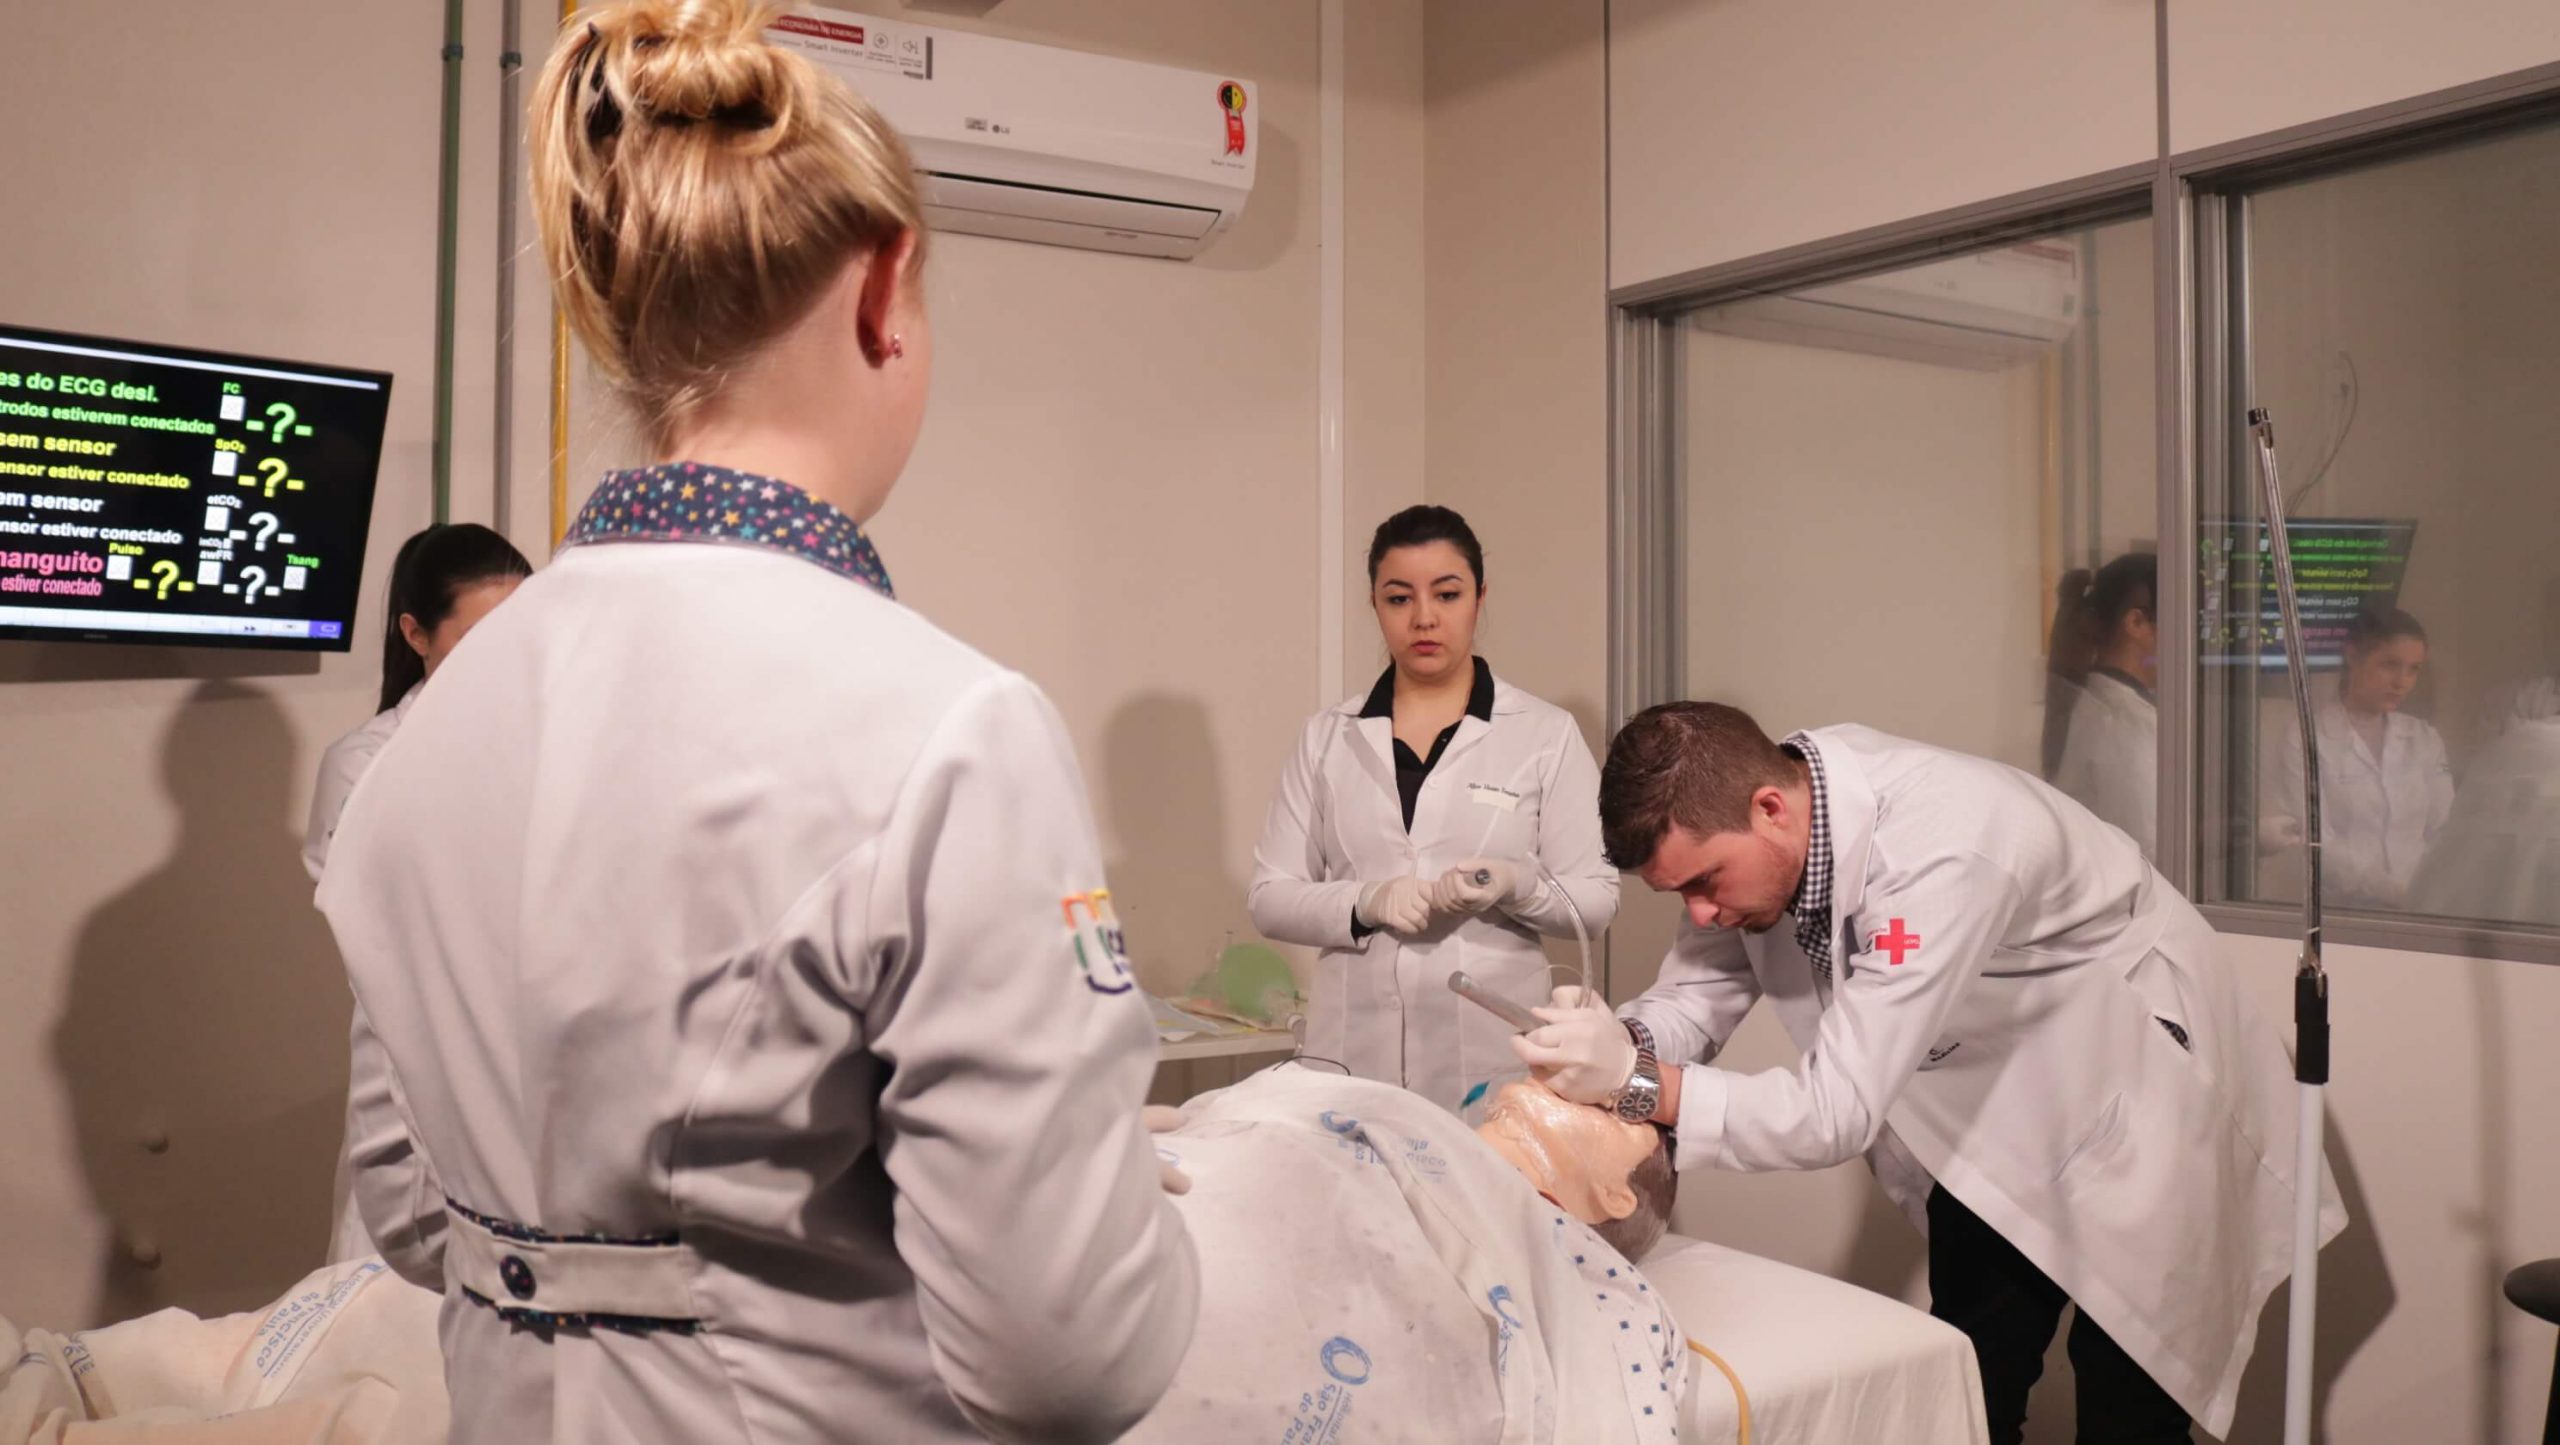 simulação realística na enfermagem, Simulação realística: utilização no ensino da Enfermagem